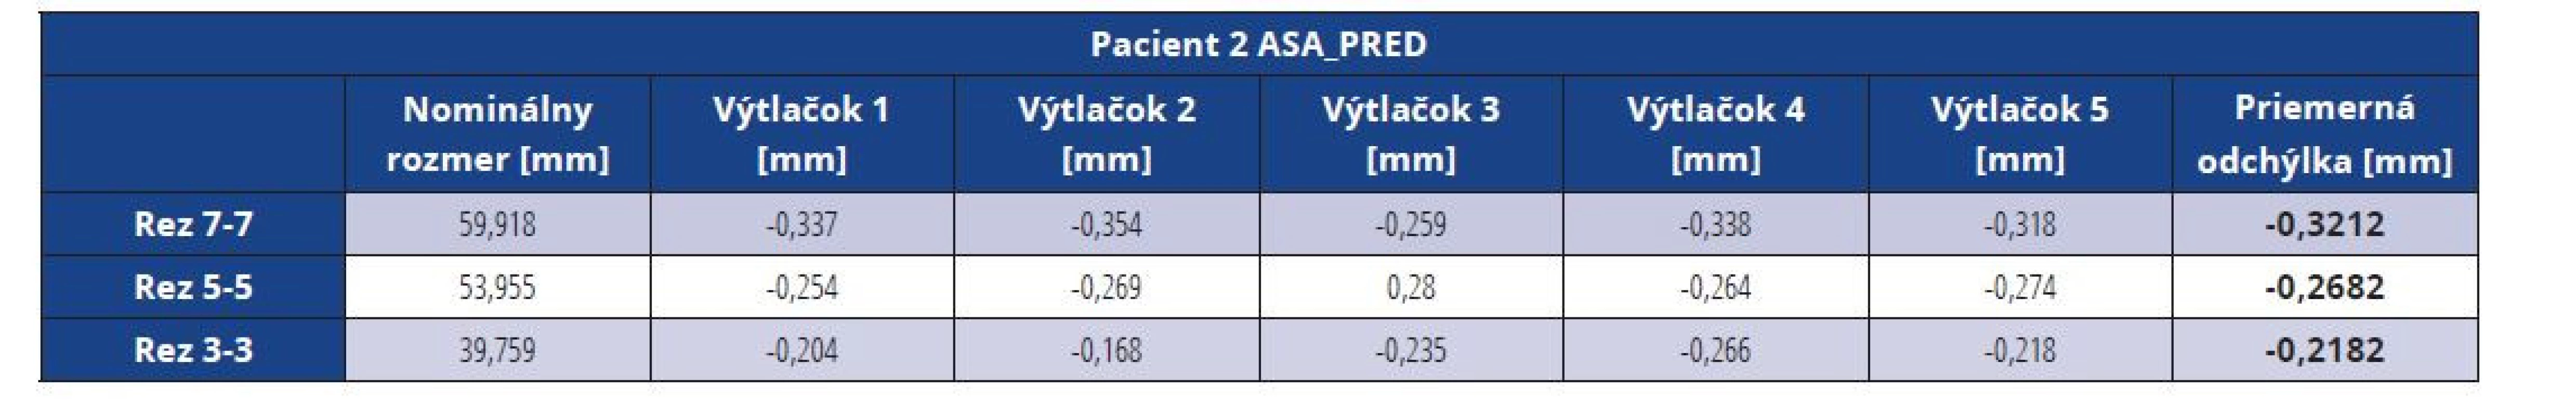 Rozmerové odchýlky master modelu pacienta 2 vytlačeného z materiálu ASA pred vákuovaním<br>
Tab. 9 Dimensional deviations of the ASA master model before vacuuming (patient 2)